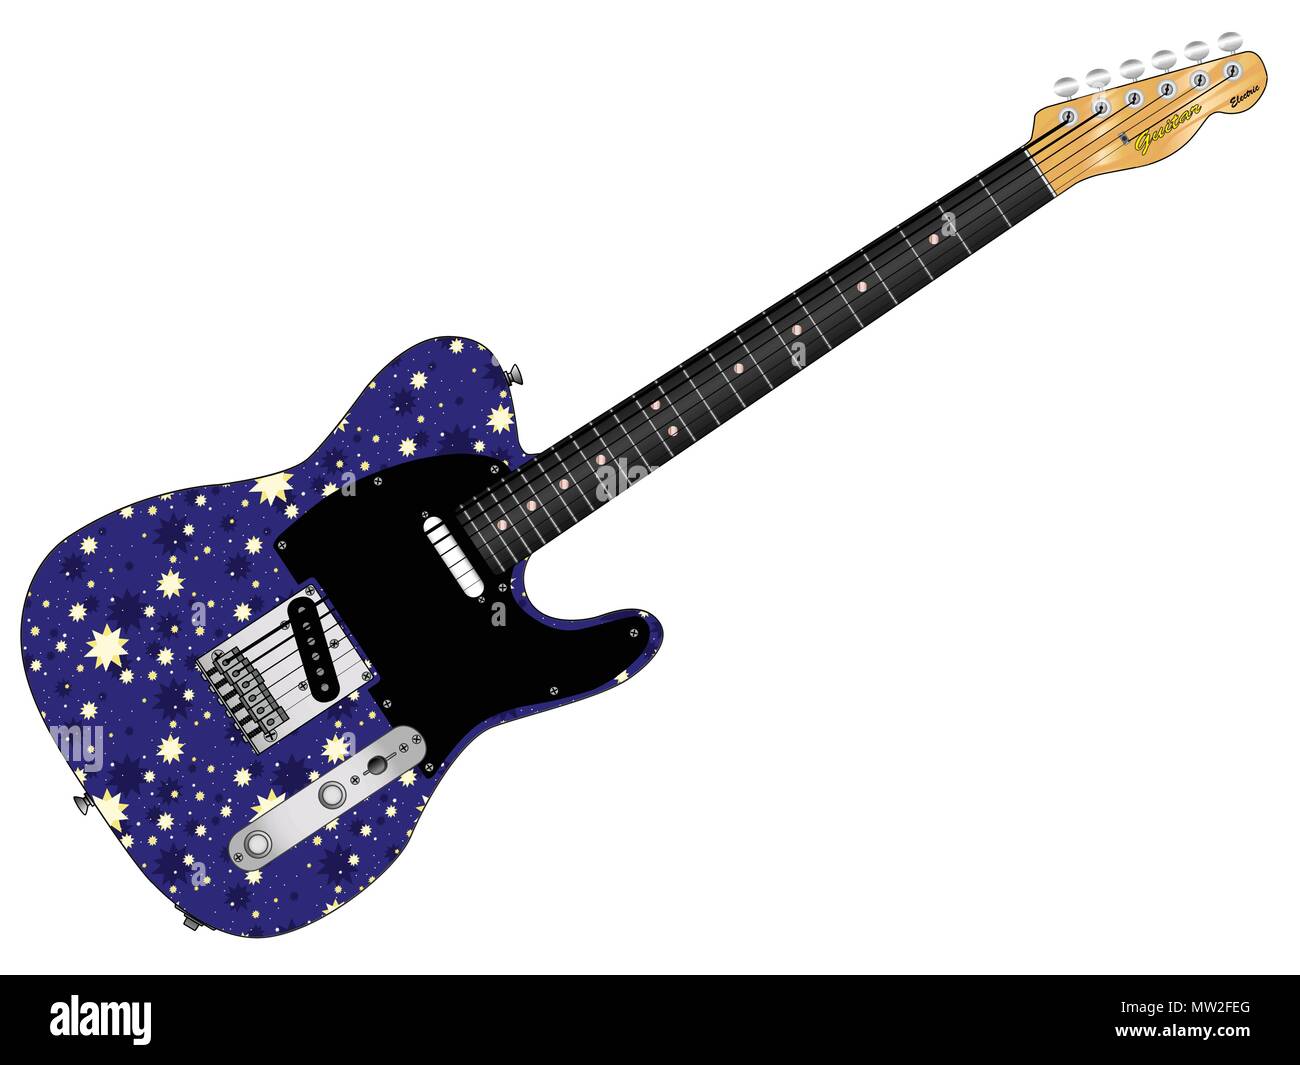 Una vieja guitarra pintada con un stary night backgrouns todos sobre un fondo blanco. Ilustración del Vector